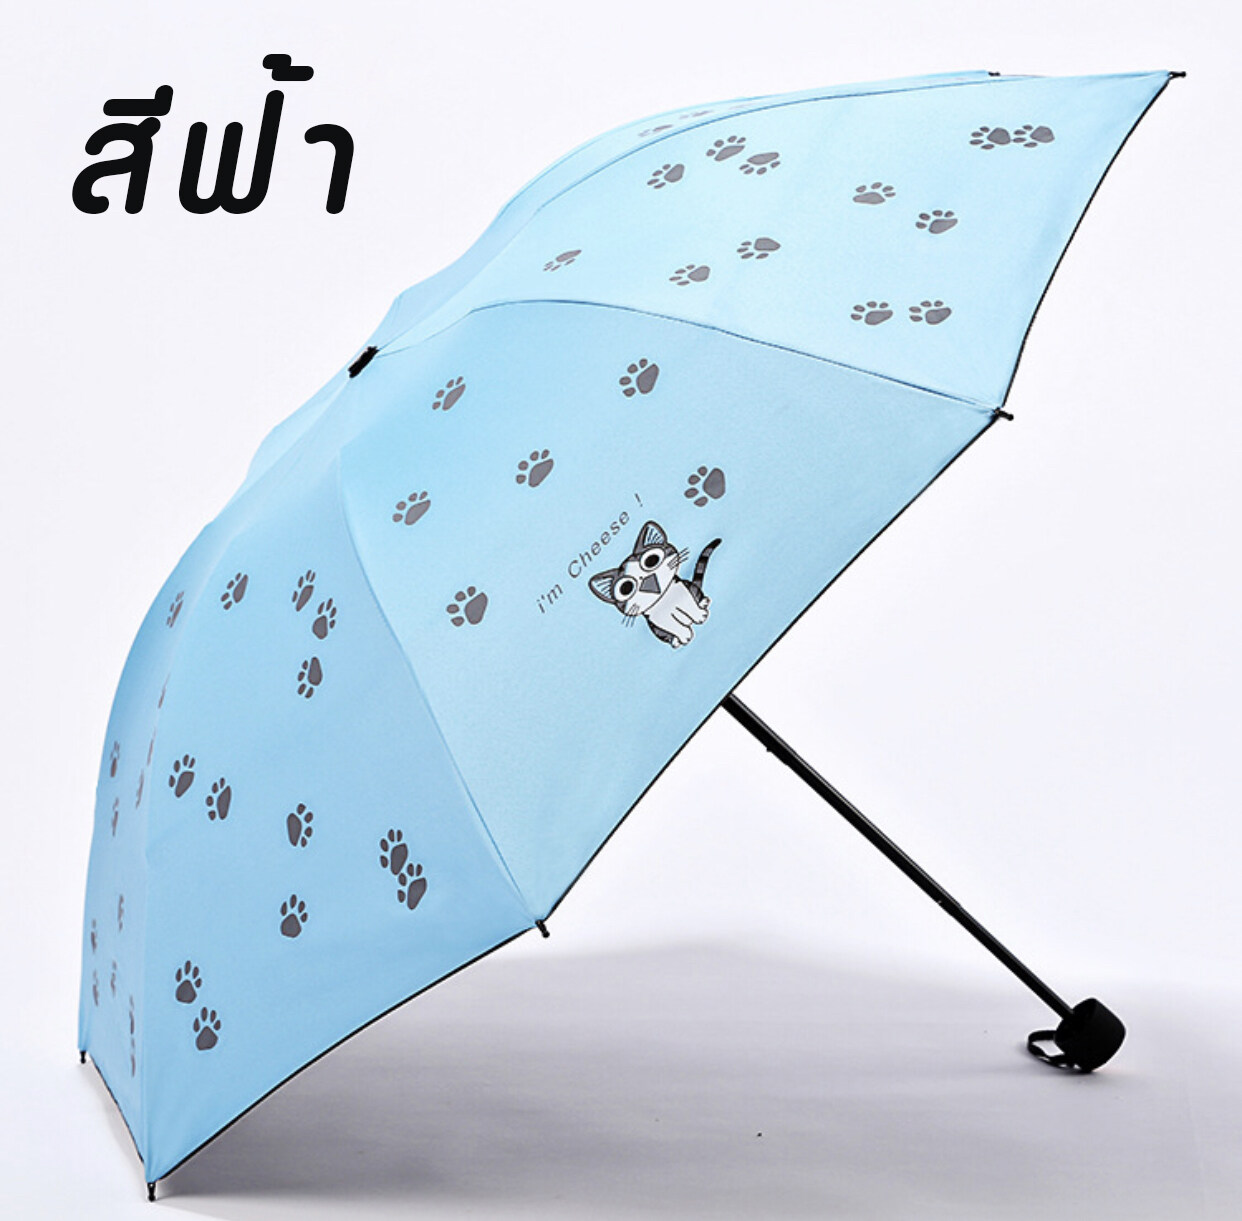 SUPER-OLINE2020 ร่มรูปแมว ร่มกันฝน ร่มพกพา ร่มแฟชั่น ร่มกันแดด กันUV  Umbrella ร่มพับได้พบพาสะดวก มี4สีให้เลือก สีฟ้า สีชมพู สีม่วง สีกรม